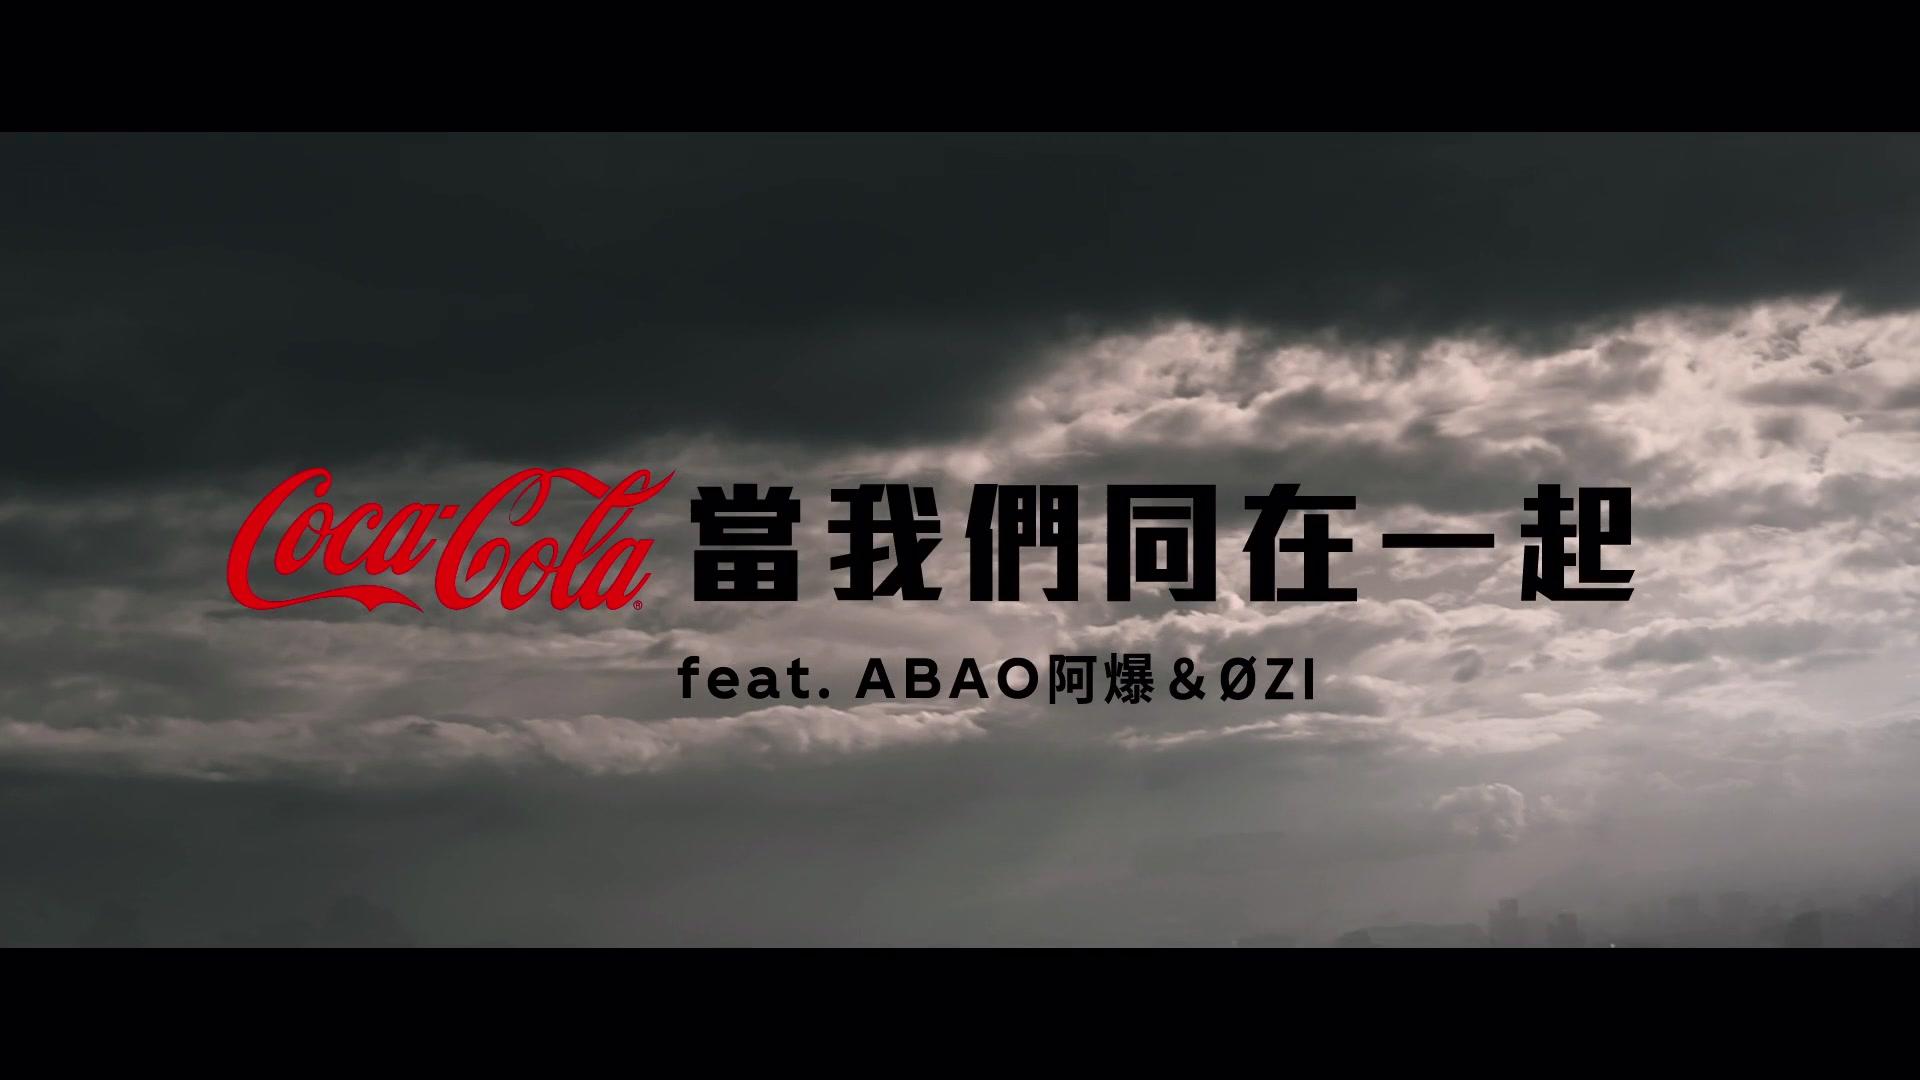 可口可乐 - OZI & ABao [Commercial]